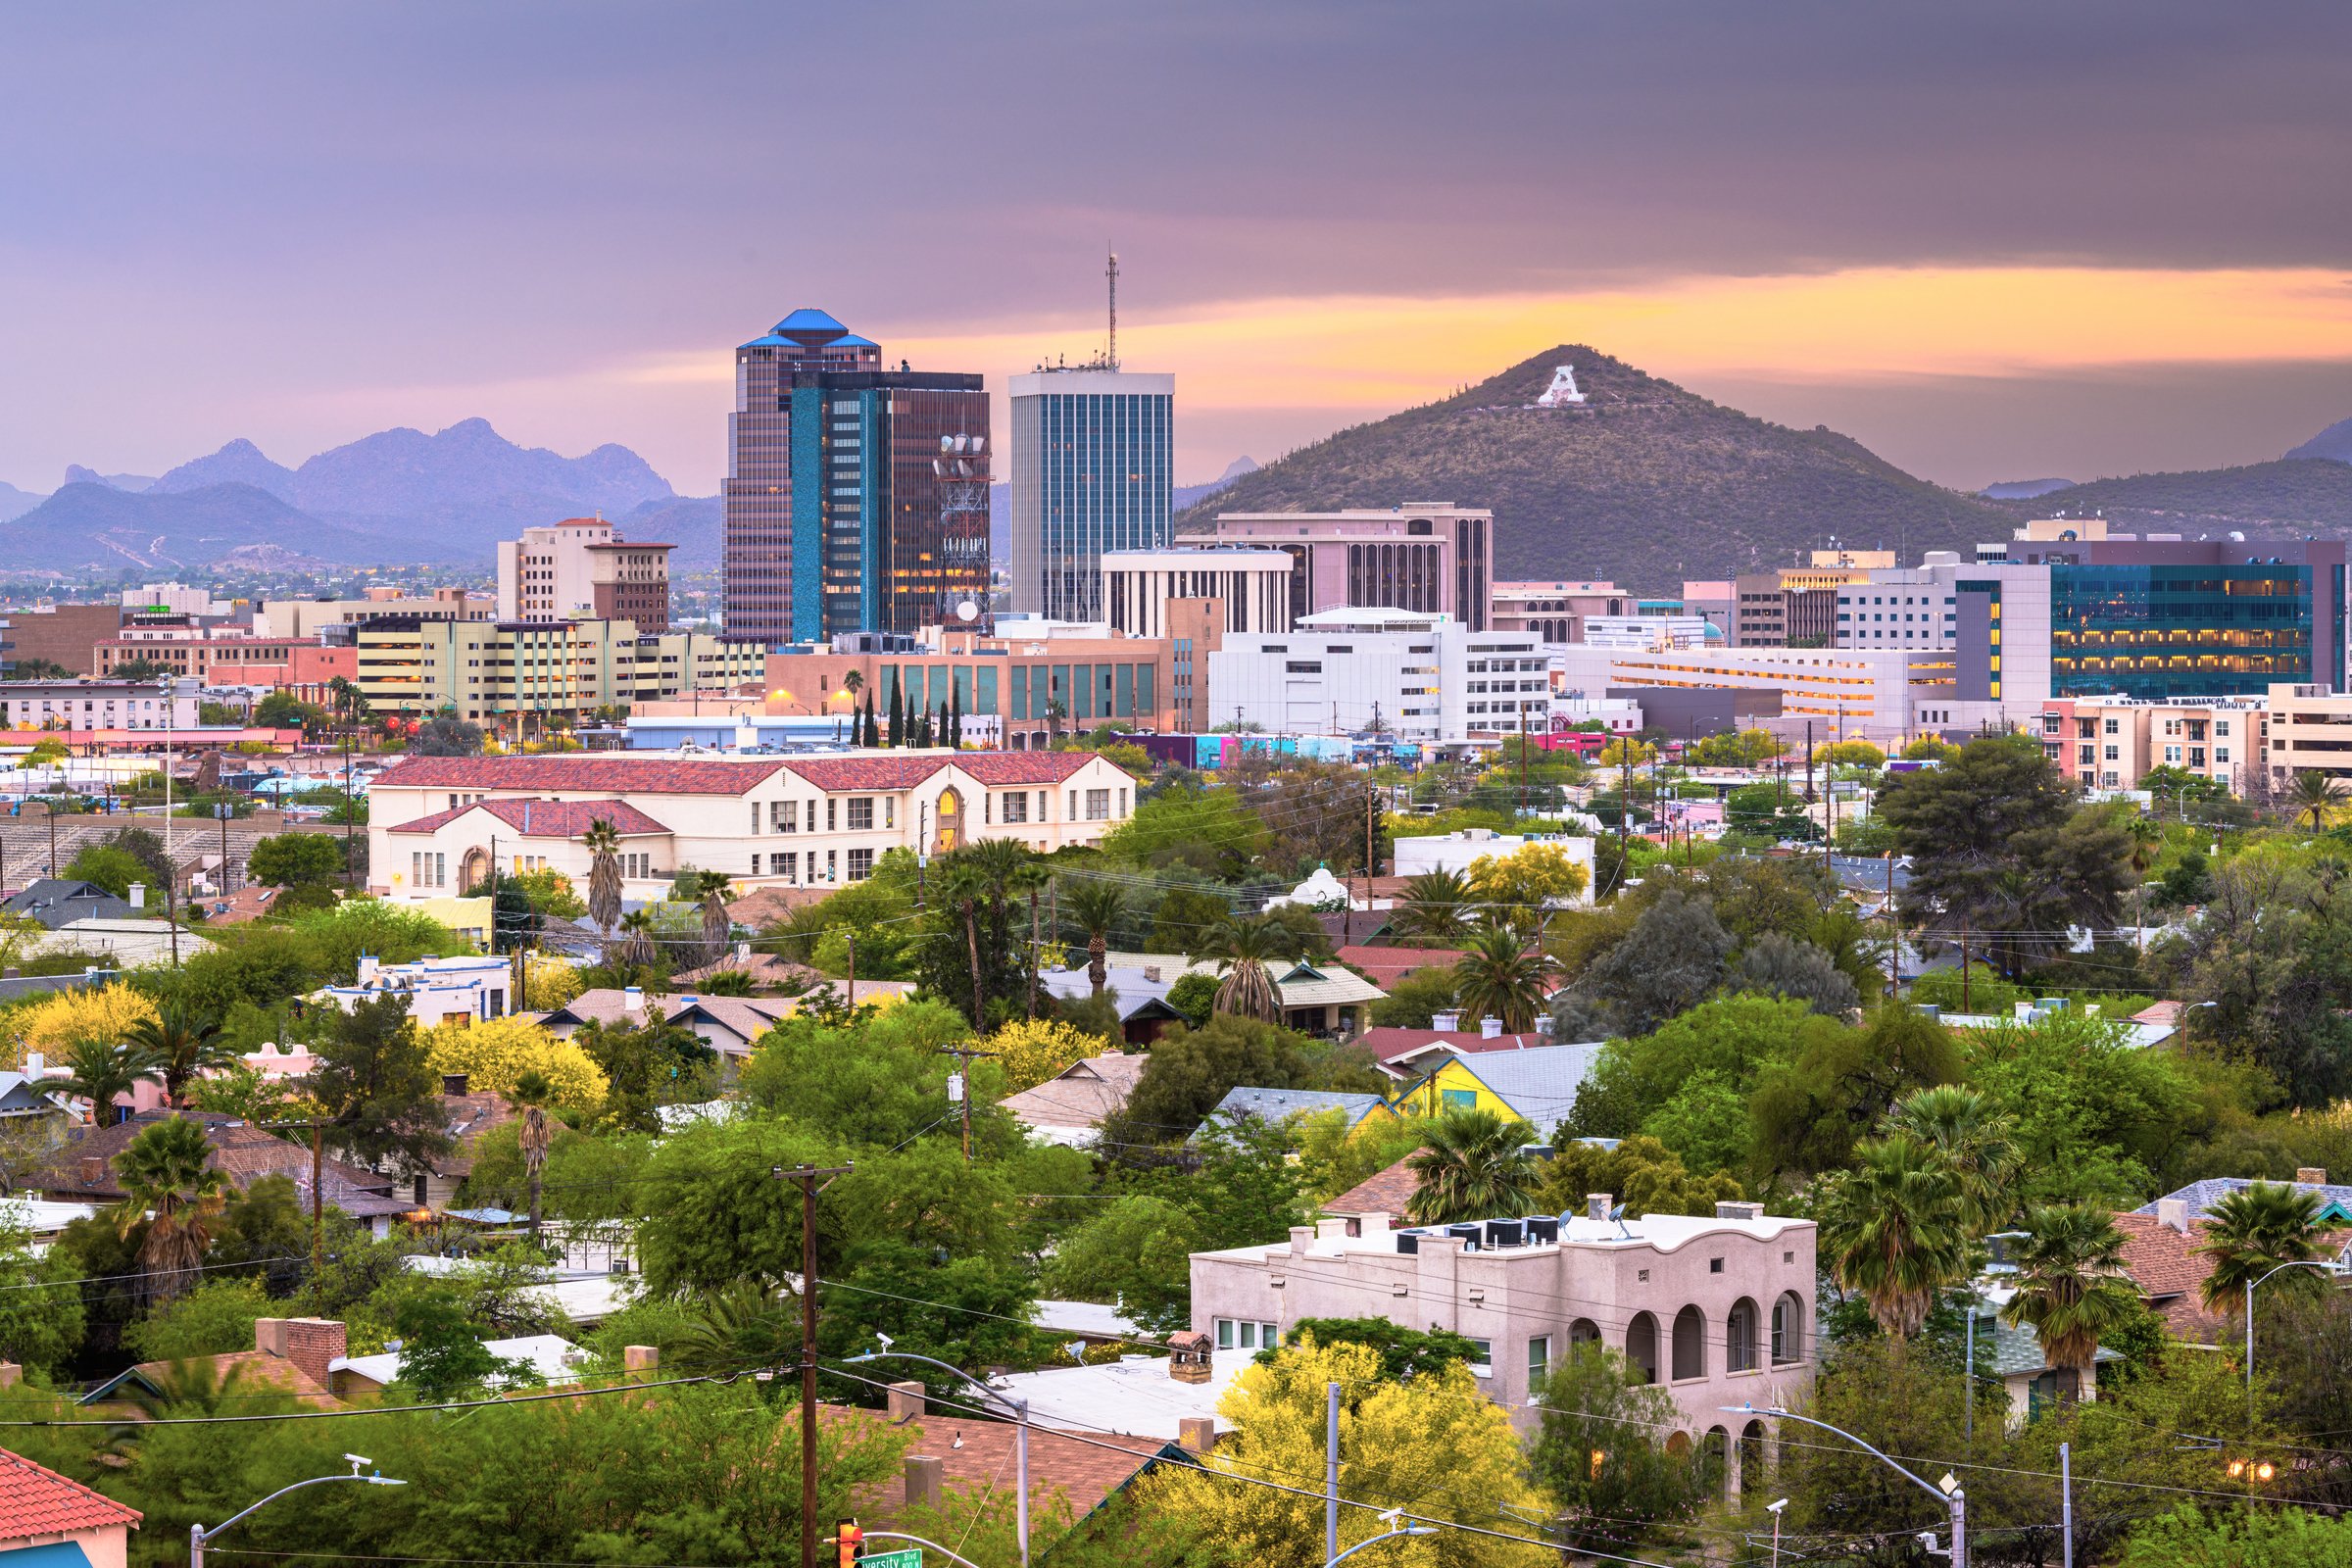 Tucson – Sean Pavone / Shutterstock